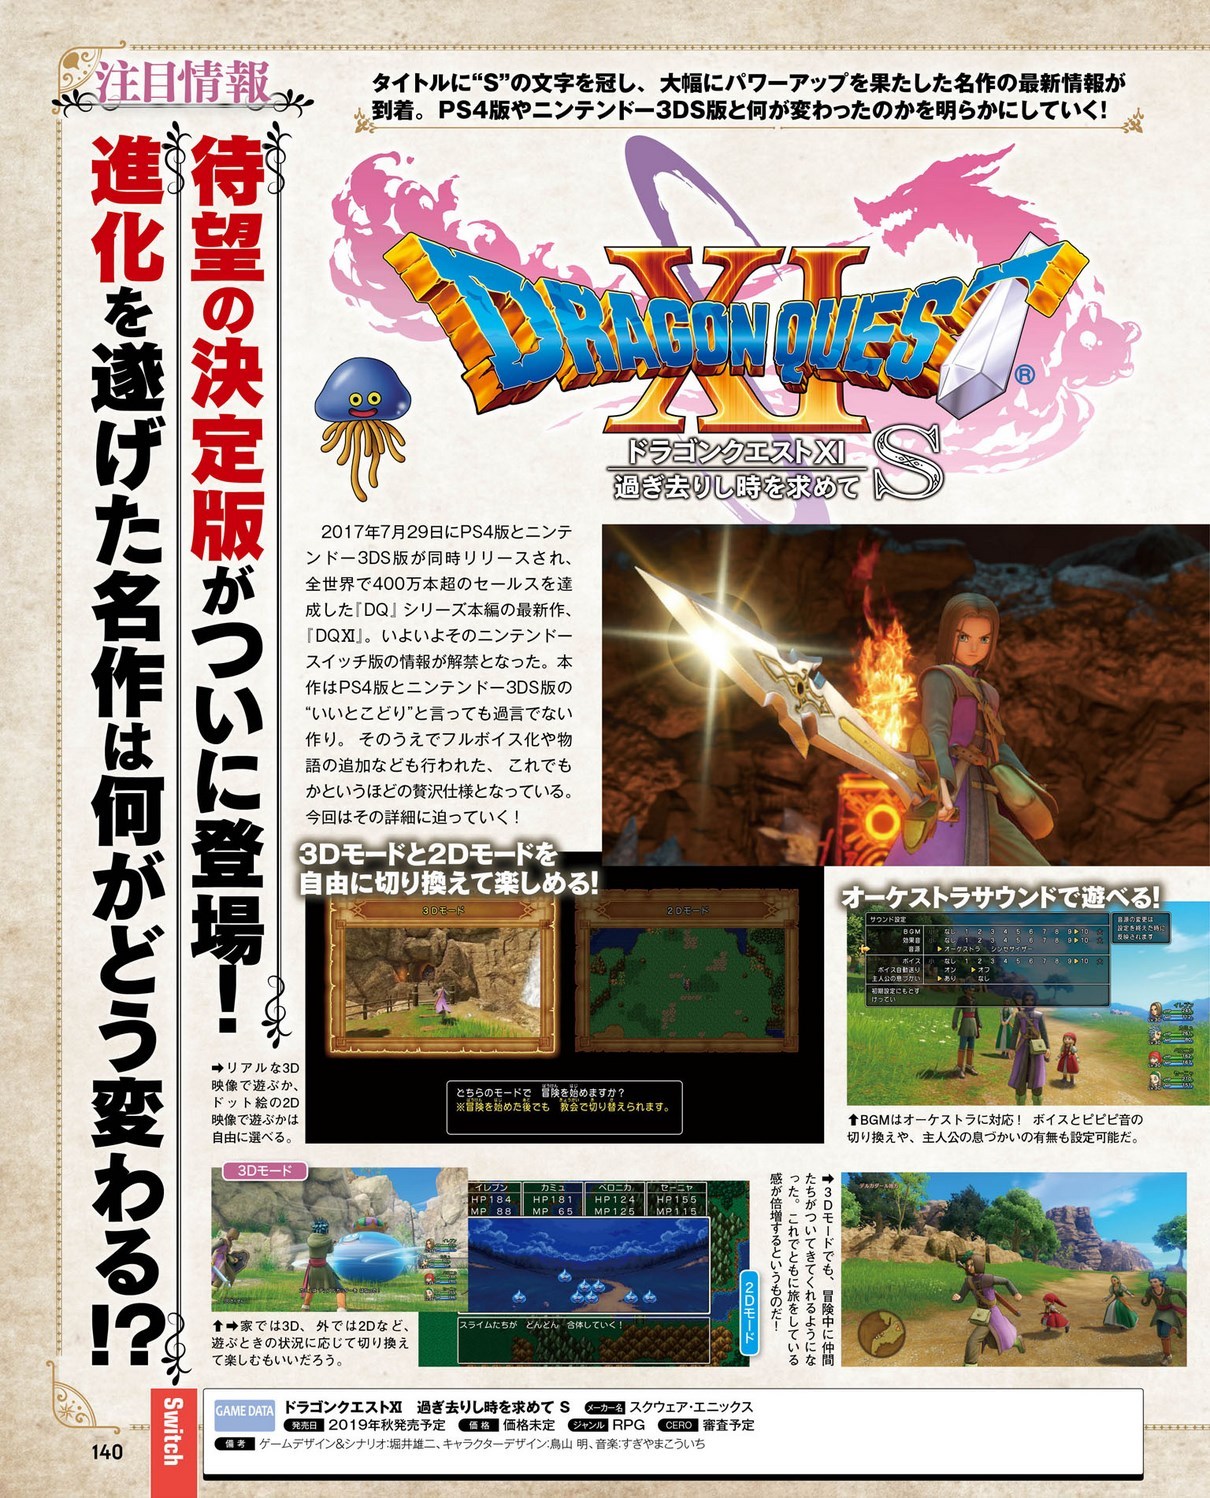 [Jeux vidéos] La saga Dragon Quest - Page 2 Tumblr_pobariuDwy1vsb5ezo1_1280